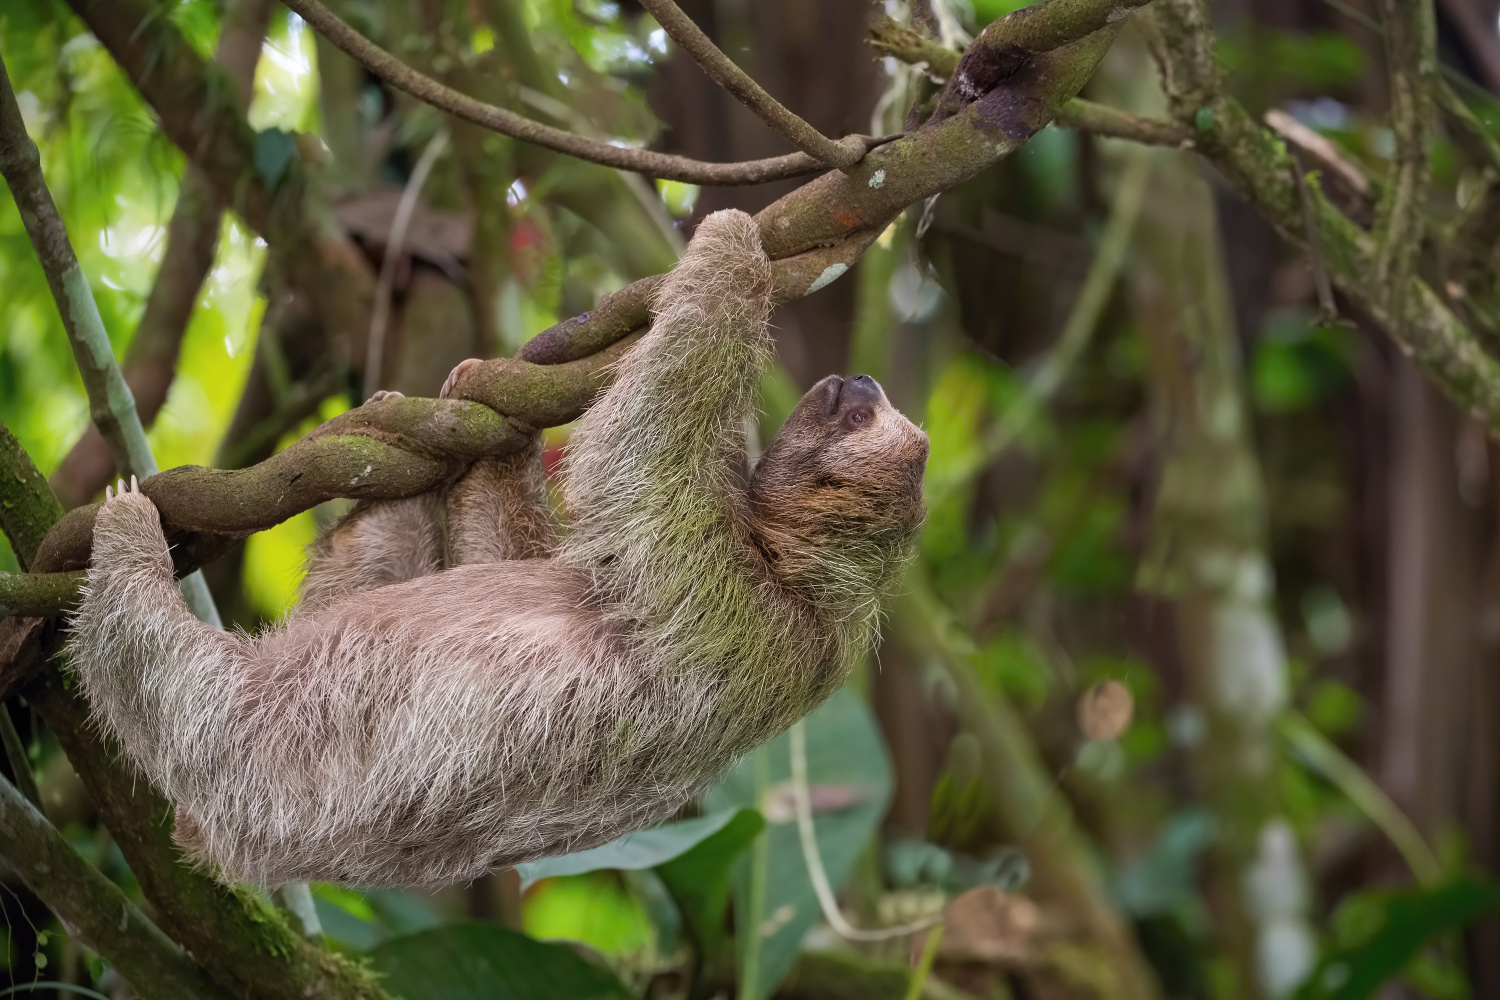 lenochod krátkokrký (Choloepus hoffmanni) Hoffmann´s two-toed sloth